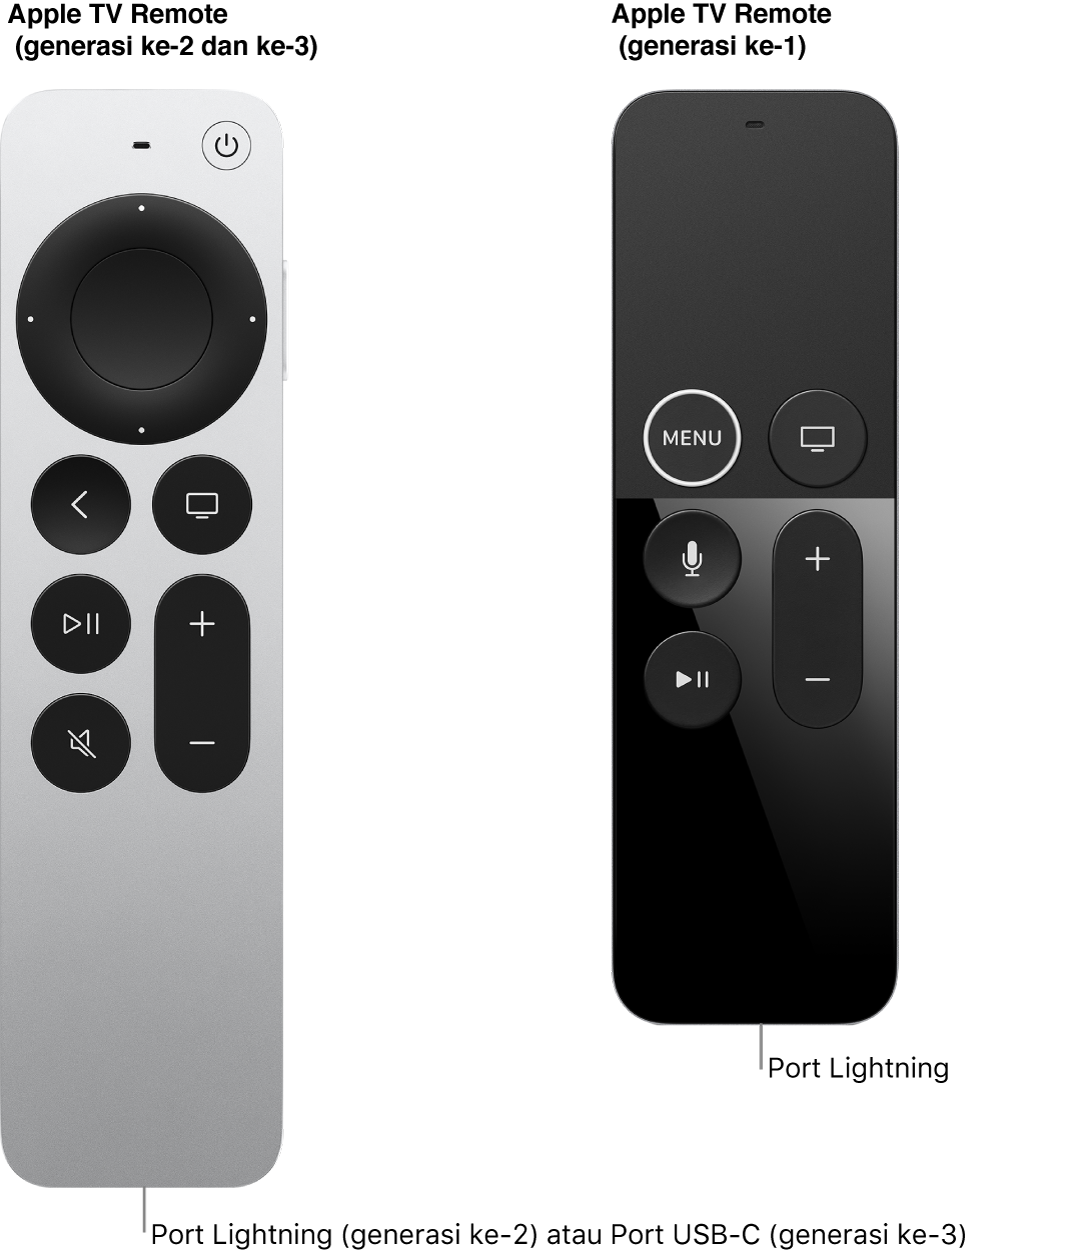 Gambar Apple TV Remote (generasi ke-2) dan Apple TV Remote (generasi ke-1) yang menampilkan port Lightning